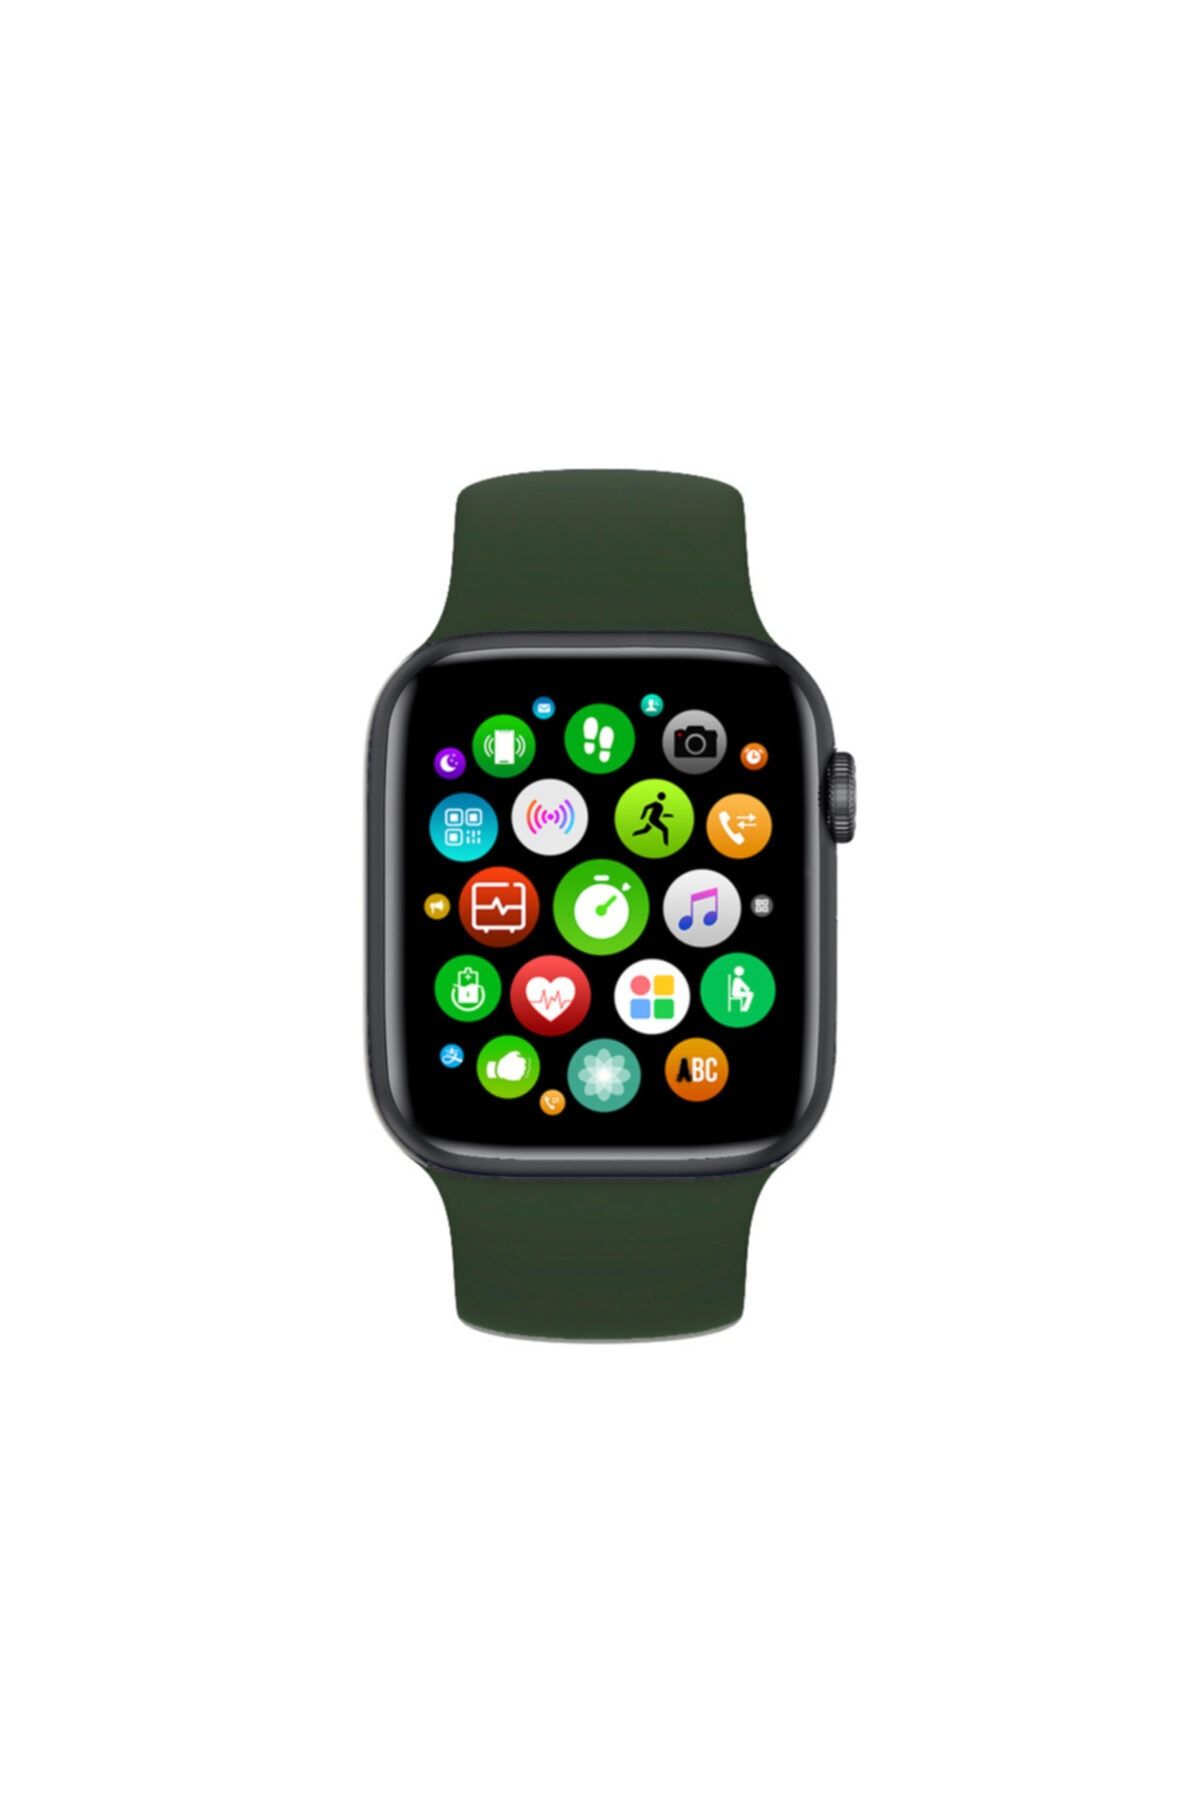 FERRO Watch 6 Plus Android Ve Ios Uyumlu Akıllı Saat